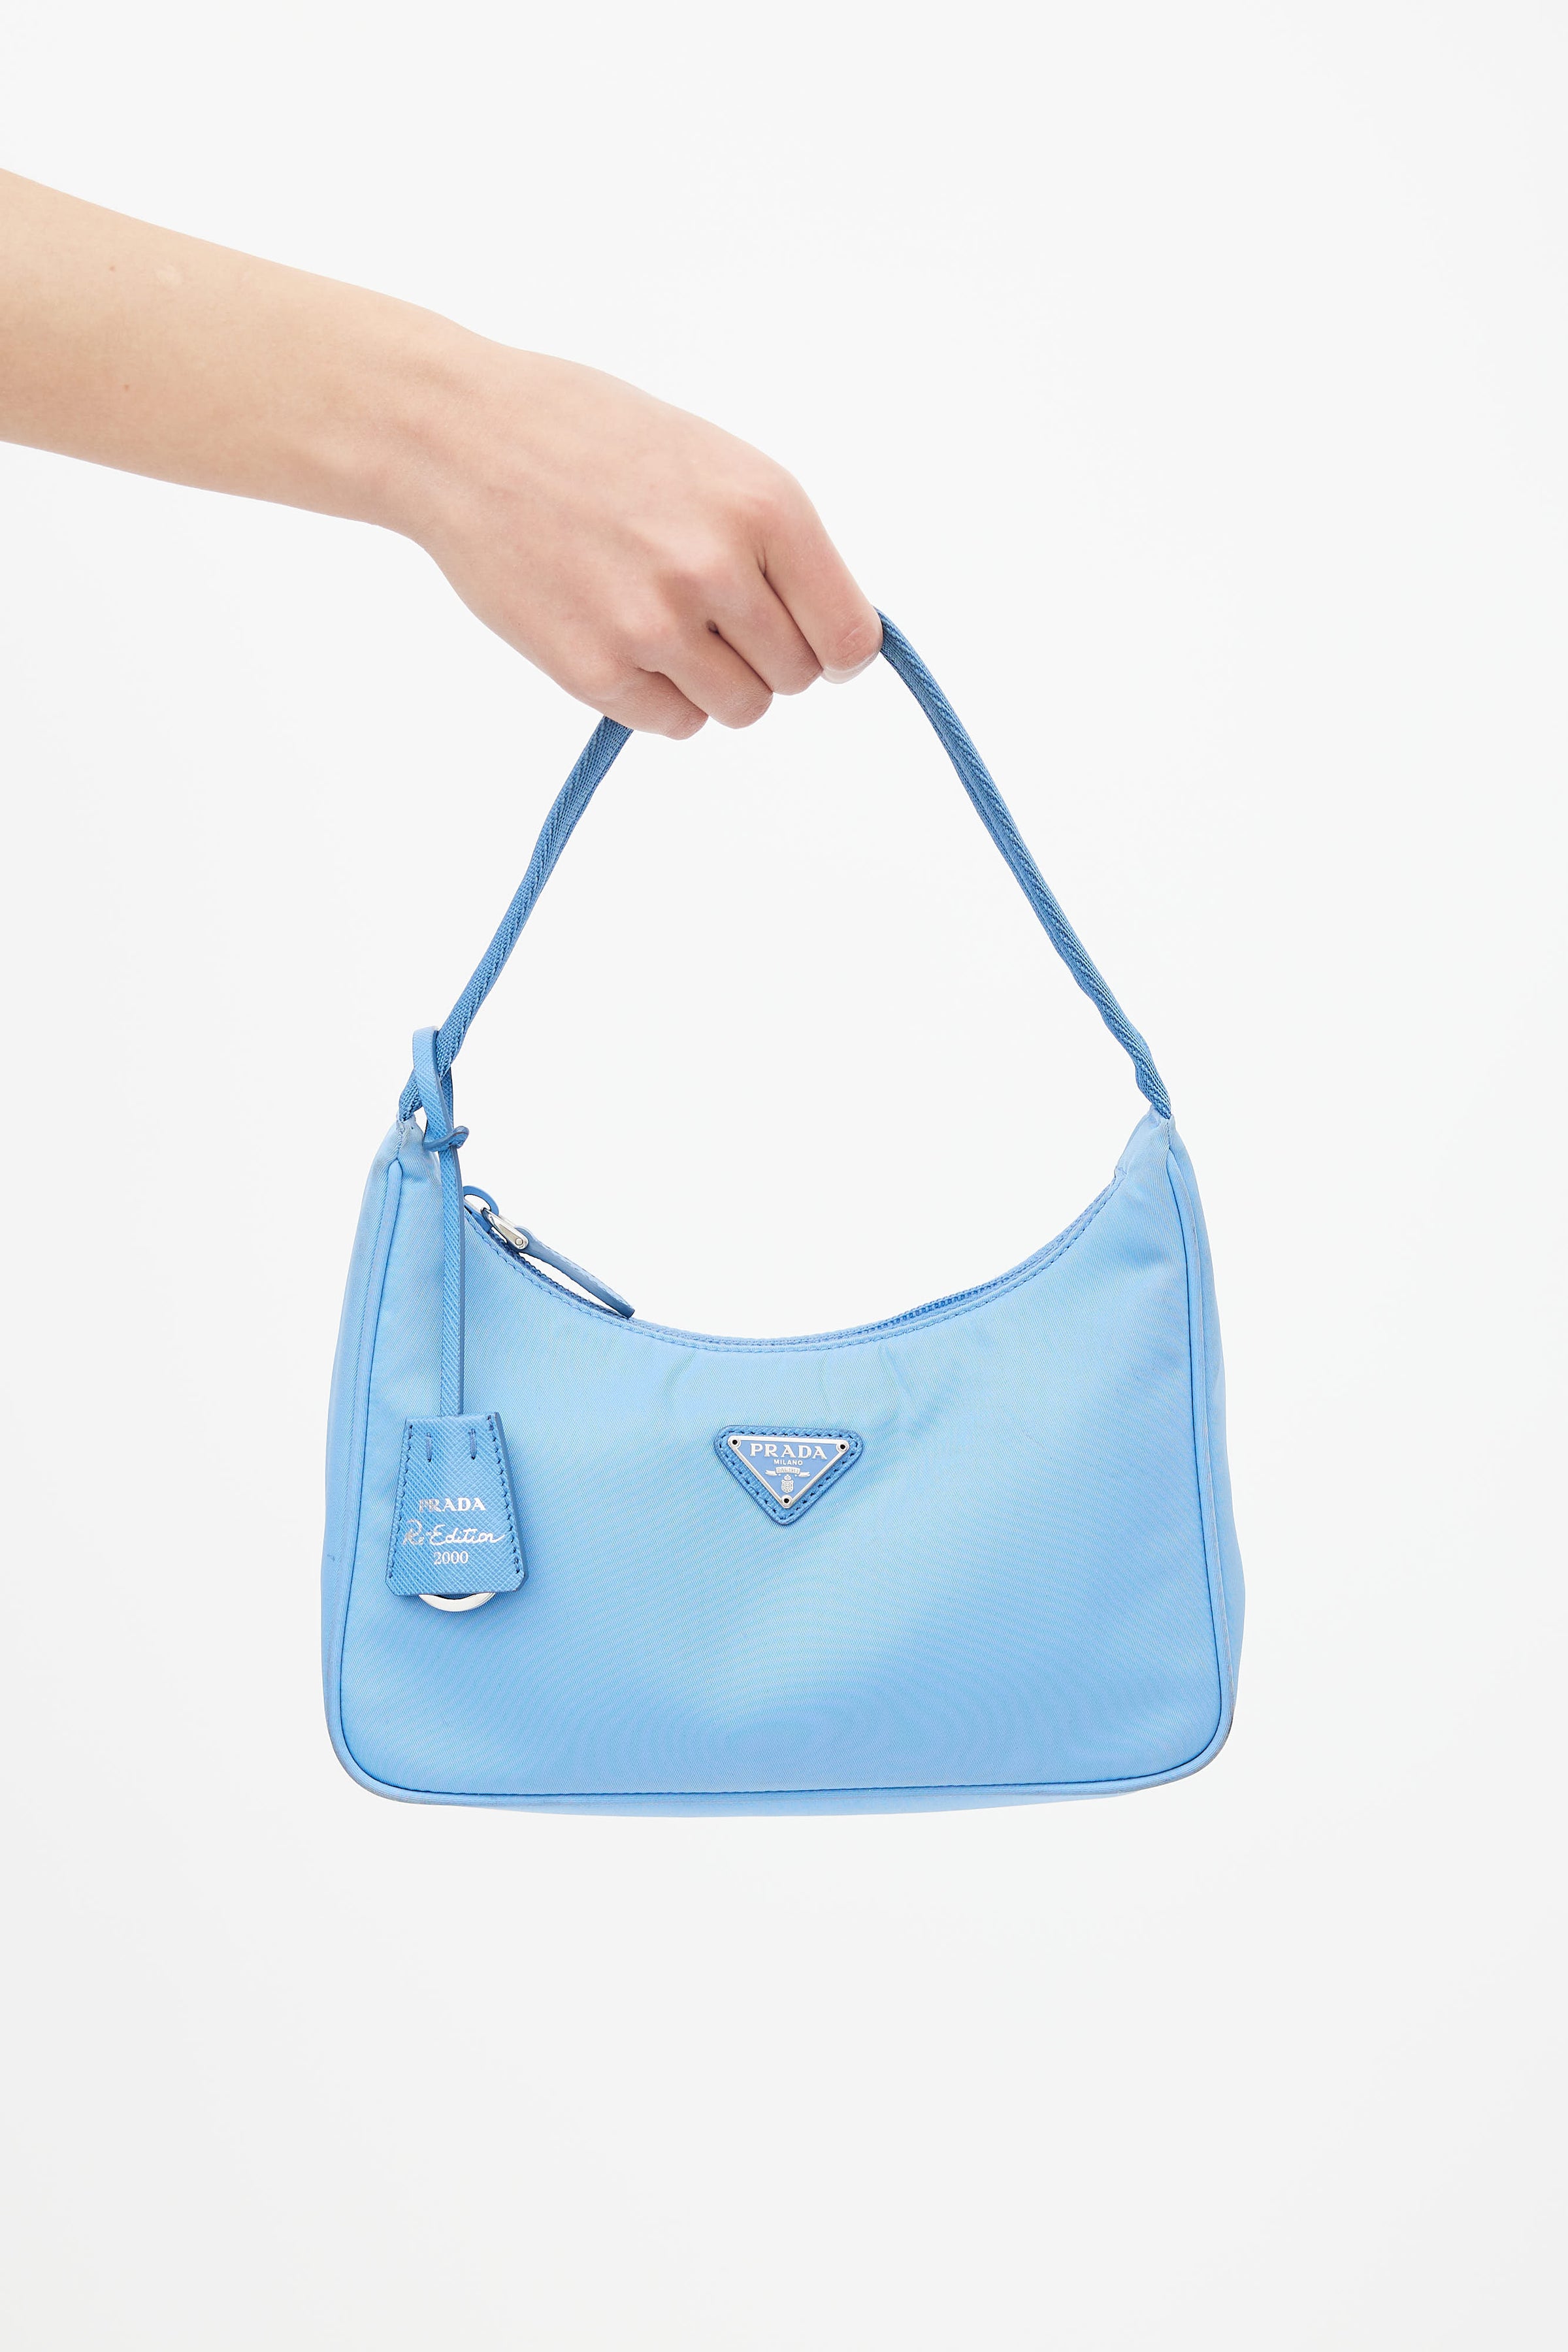 Prada - Authenticated Re-Edition 2000 Handbag - Cloth Blue Plain for Women, Very Good Condition